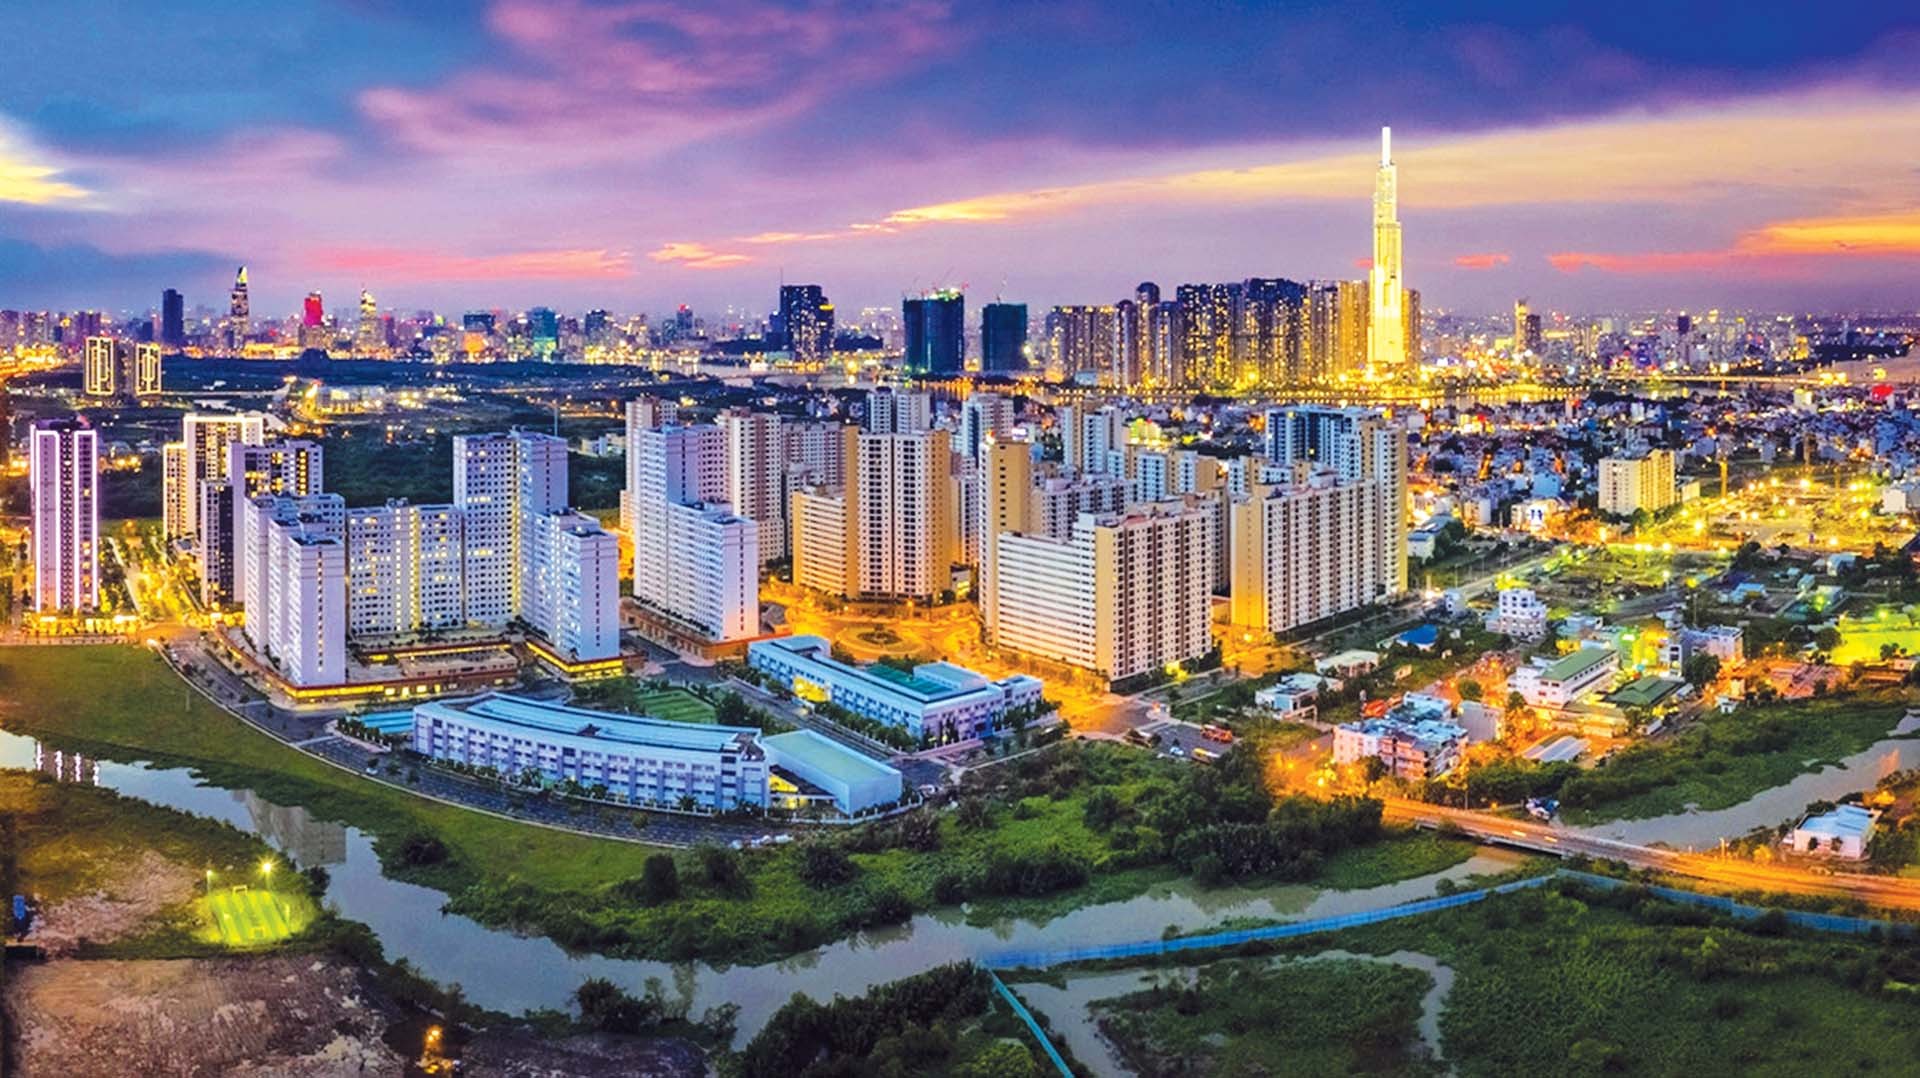 Cần xác định tầm nhìn đến năm 2050, TP. Hồ Chí Minh phát triển ngang tầm các đô thị lớn trên thế giới, trở thành một trong những trung tâm  tài chính quan trọng của khu vực Ấn Độ Dương - Thái Bình Dương. (Nguồn: TTXVN)